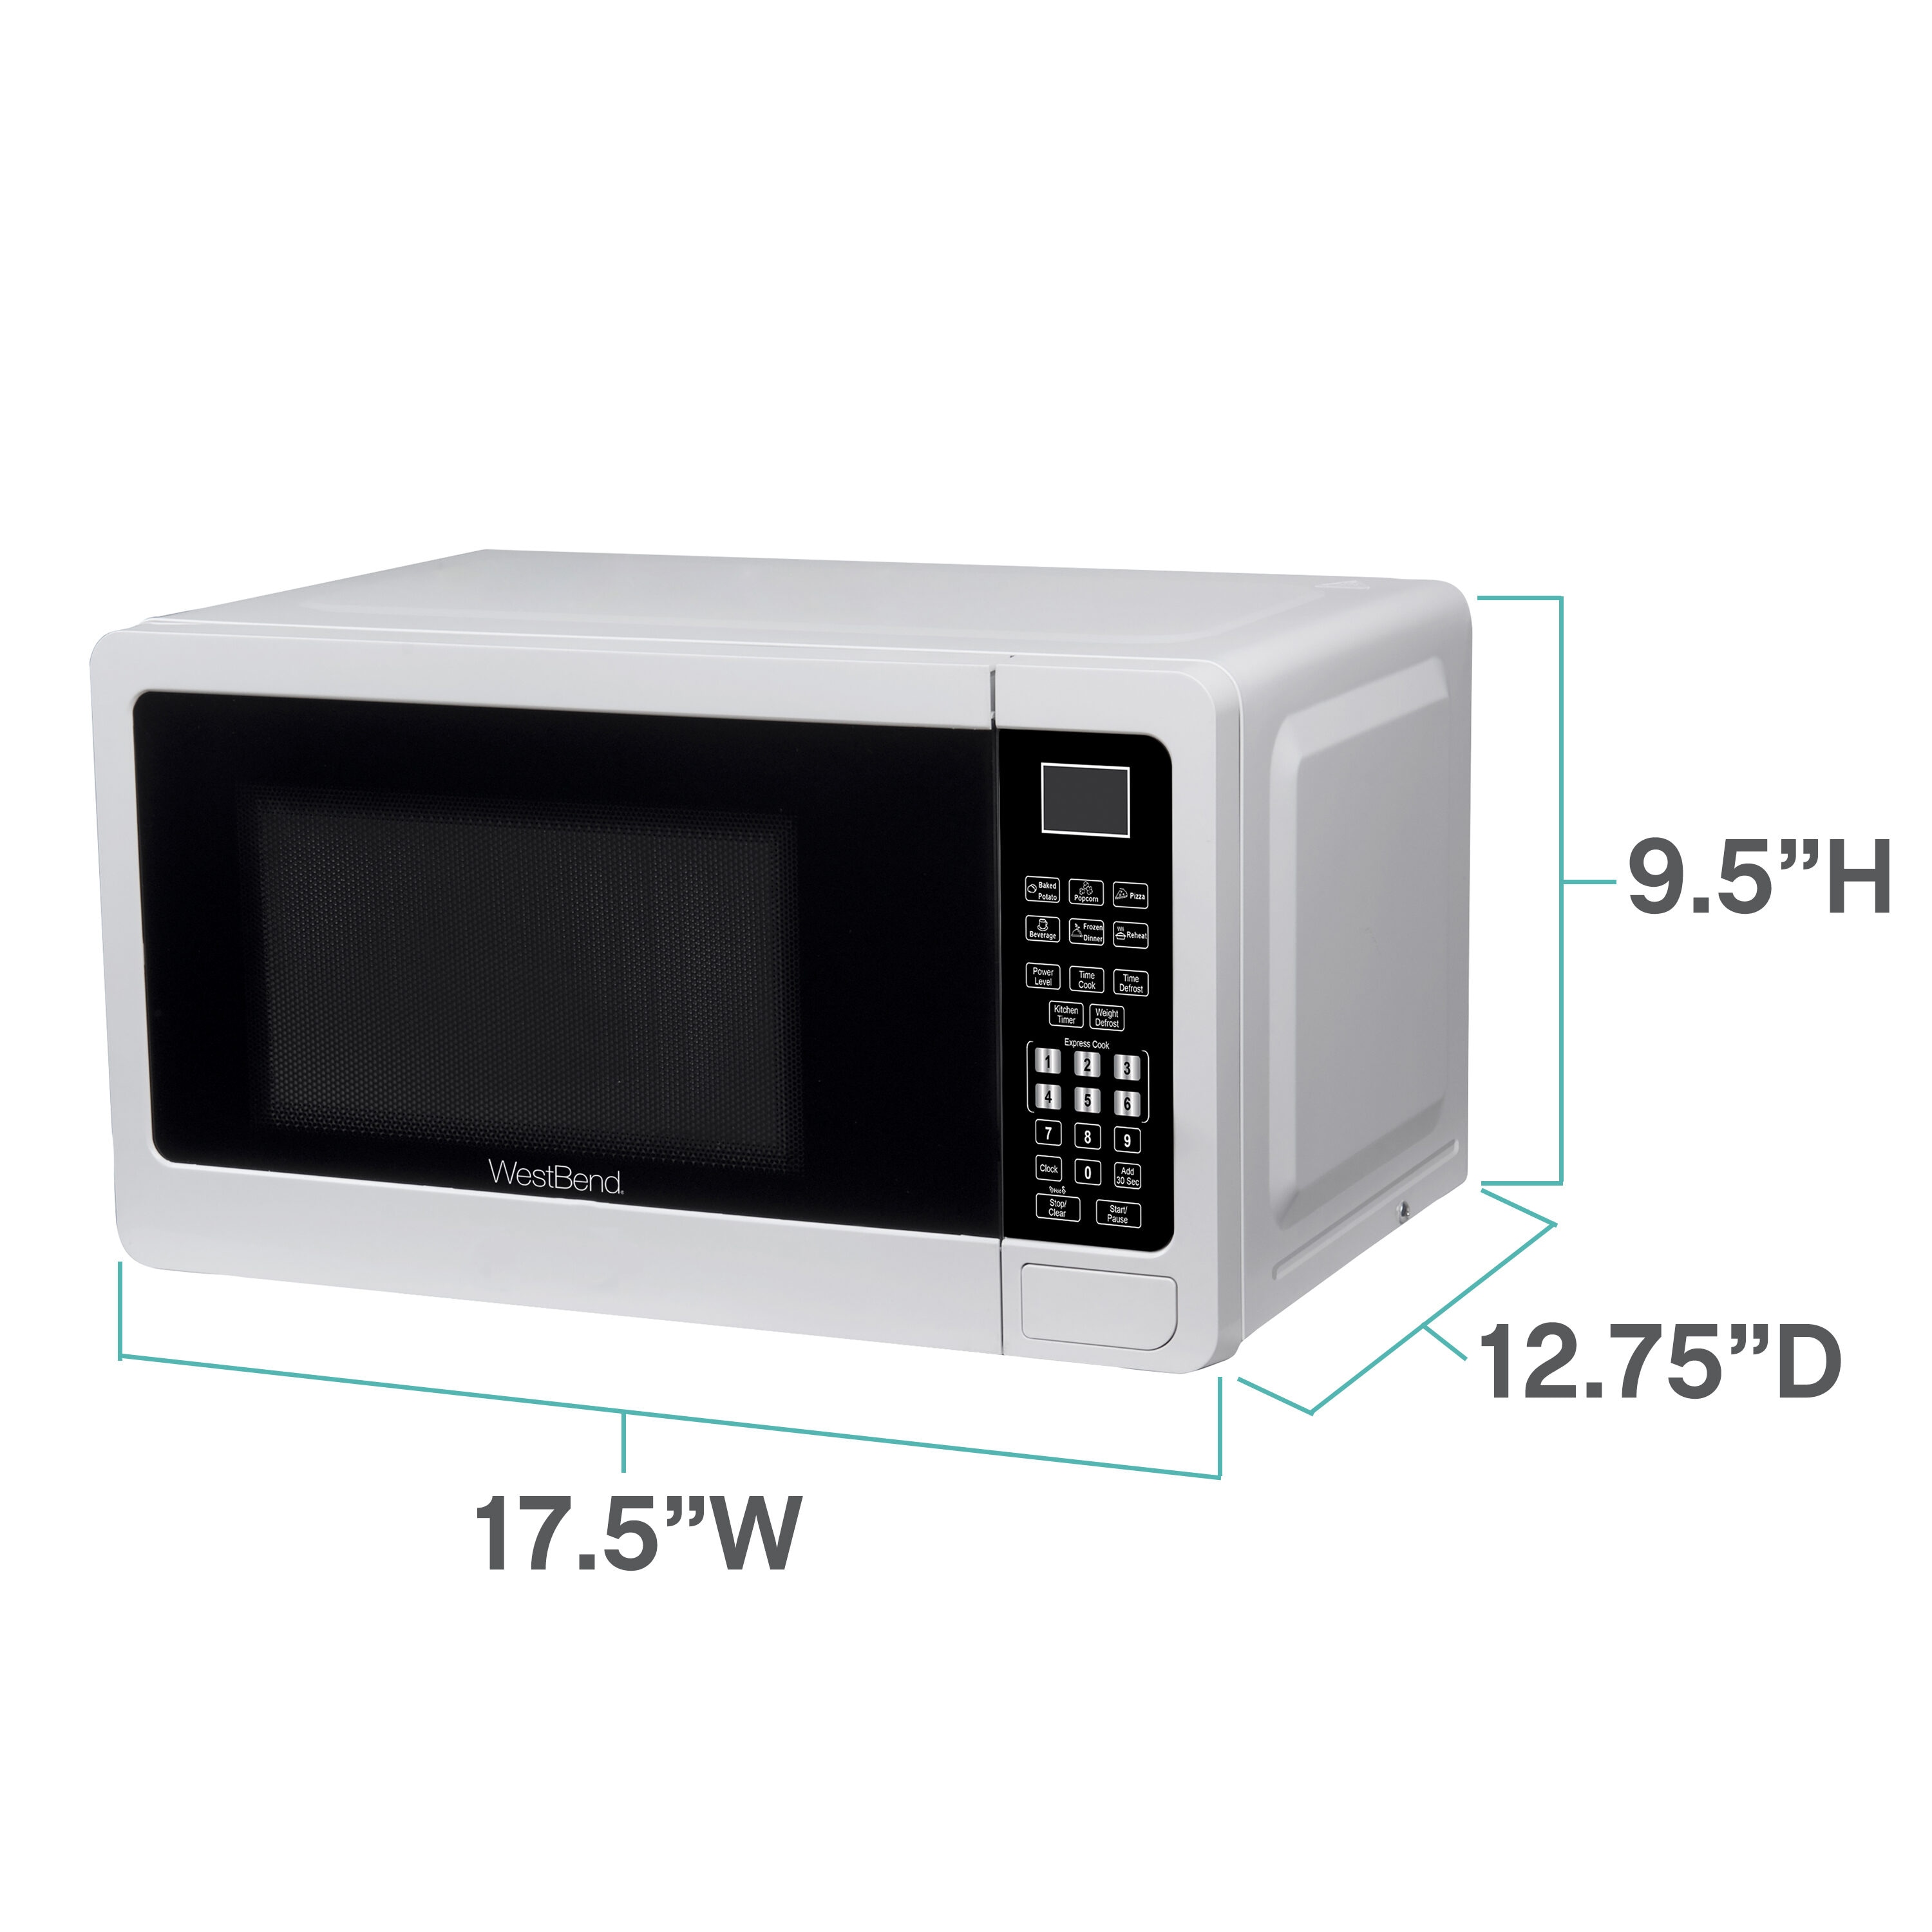 West Bend 0.7 Cu. Ft. 700 Watt Compact Kitchen Countertop